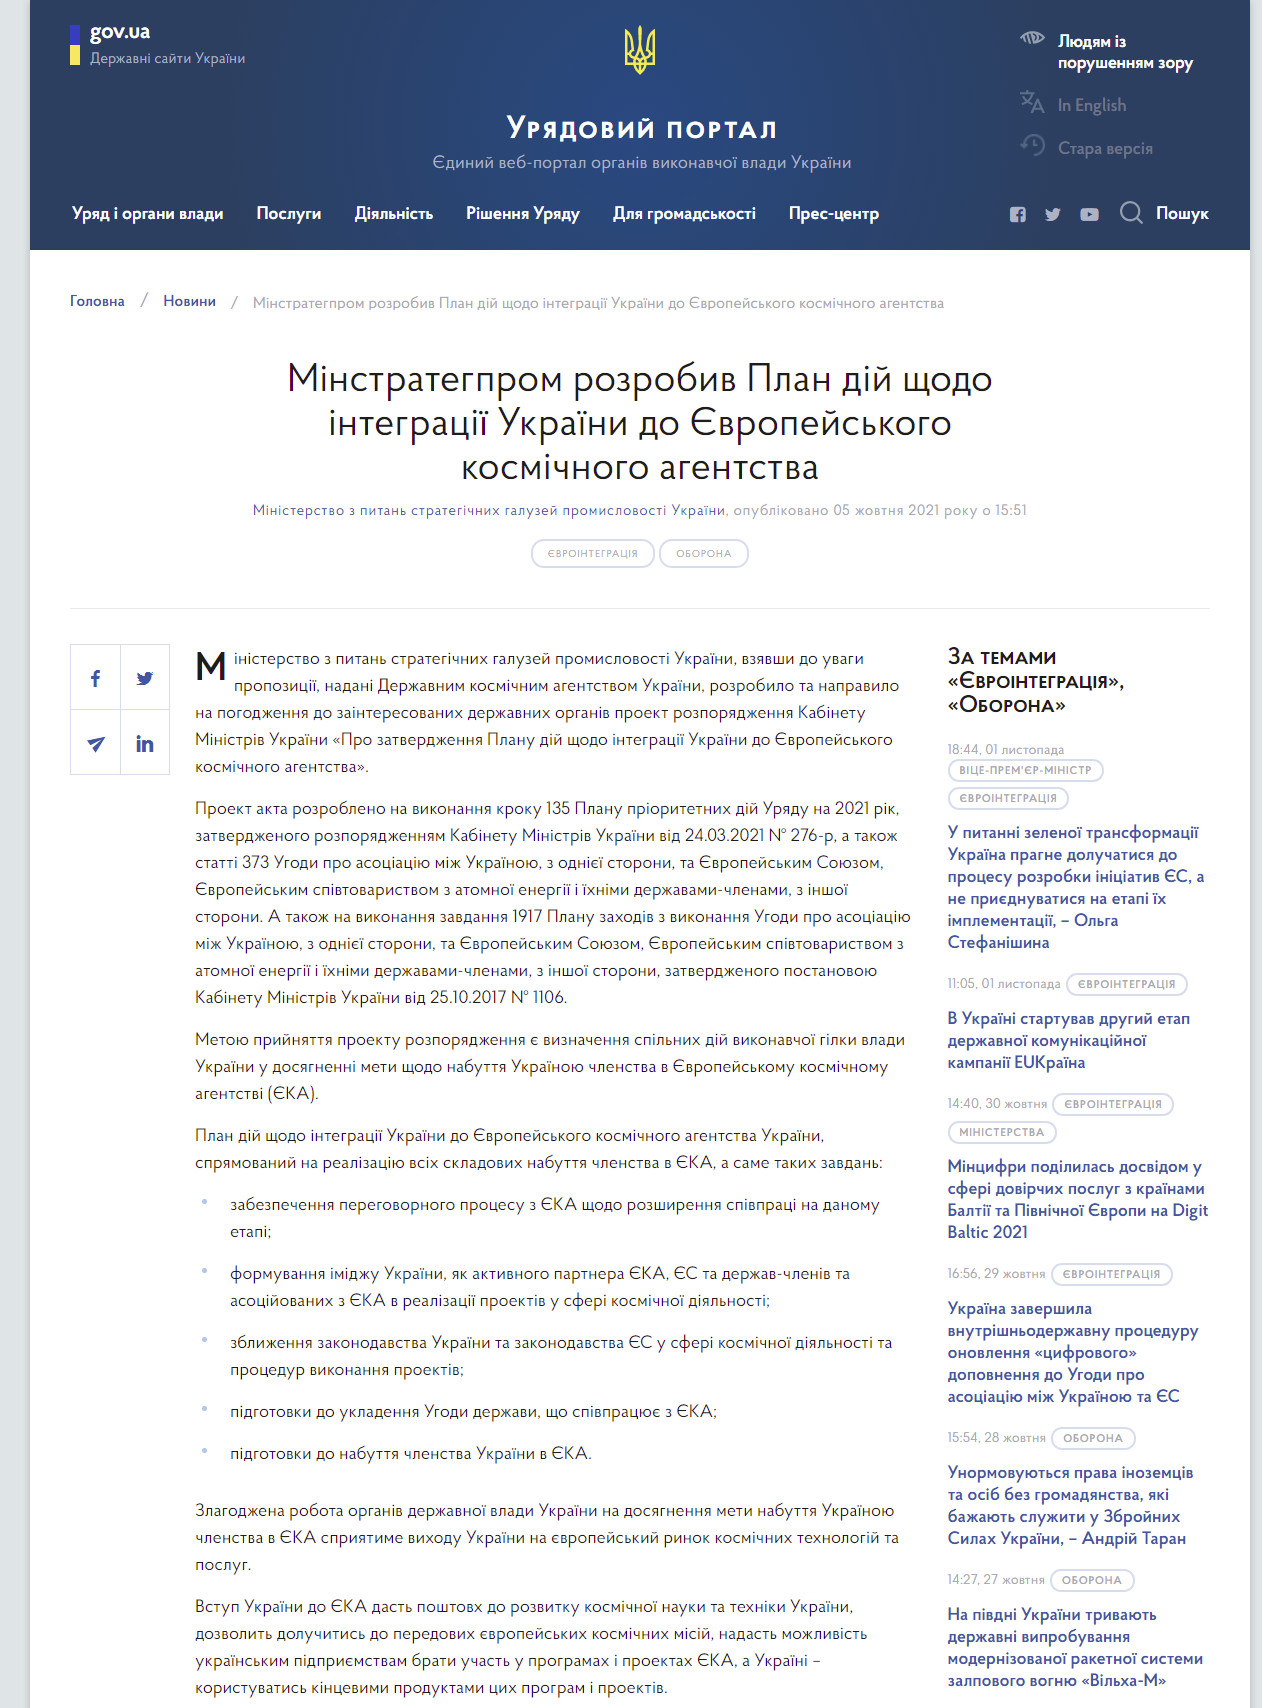 https://www.kmu.gov.ua/news/minstrategprom-rozrobiv-plan-dij-shchodo-integraciyi-ukrayini-do-yevropejskogo-kosmichnogo-agentstva